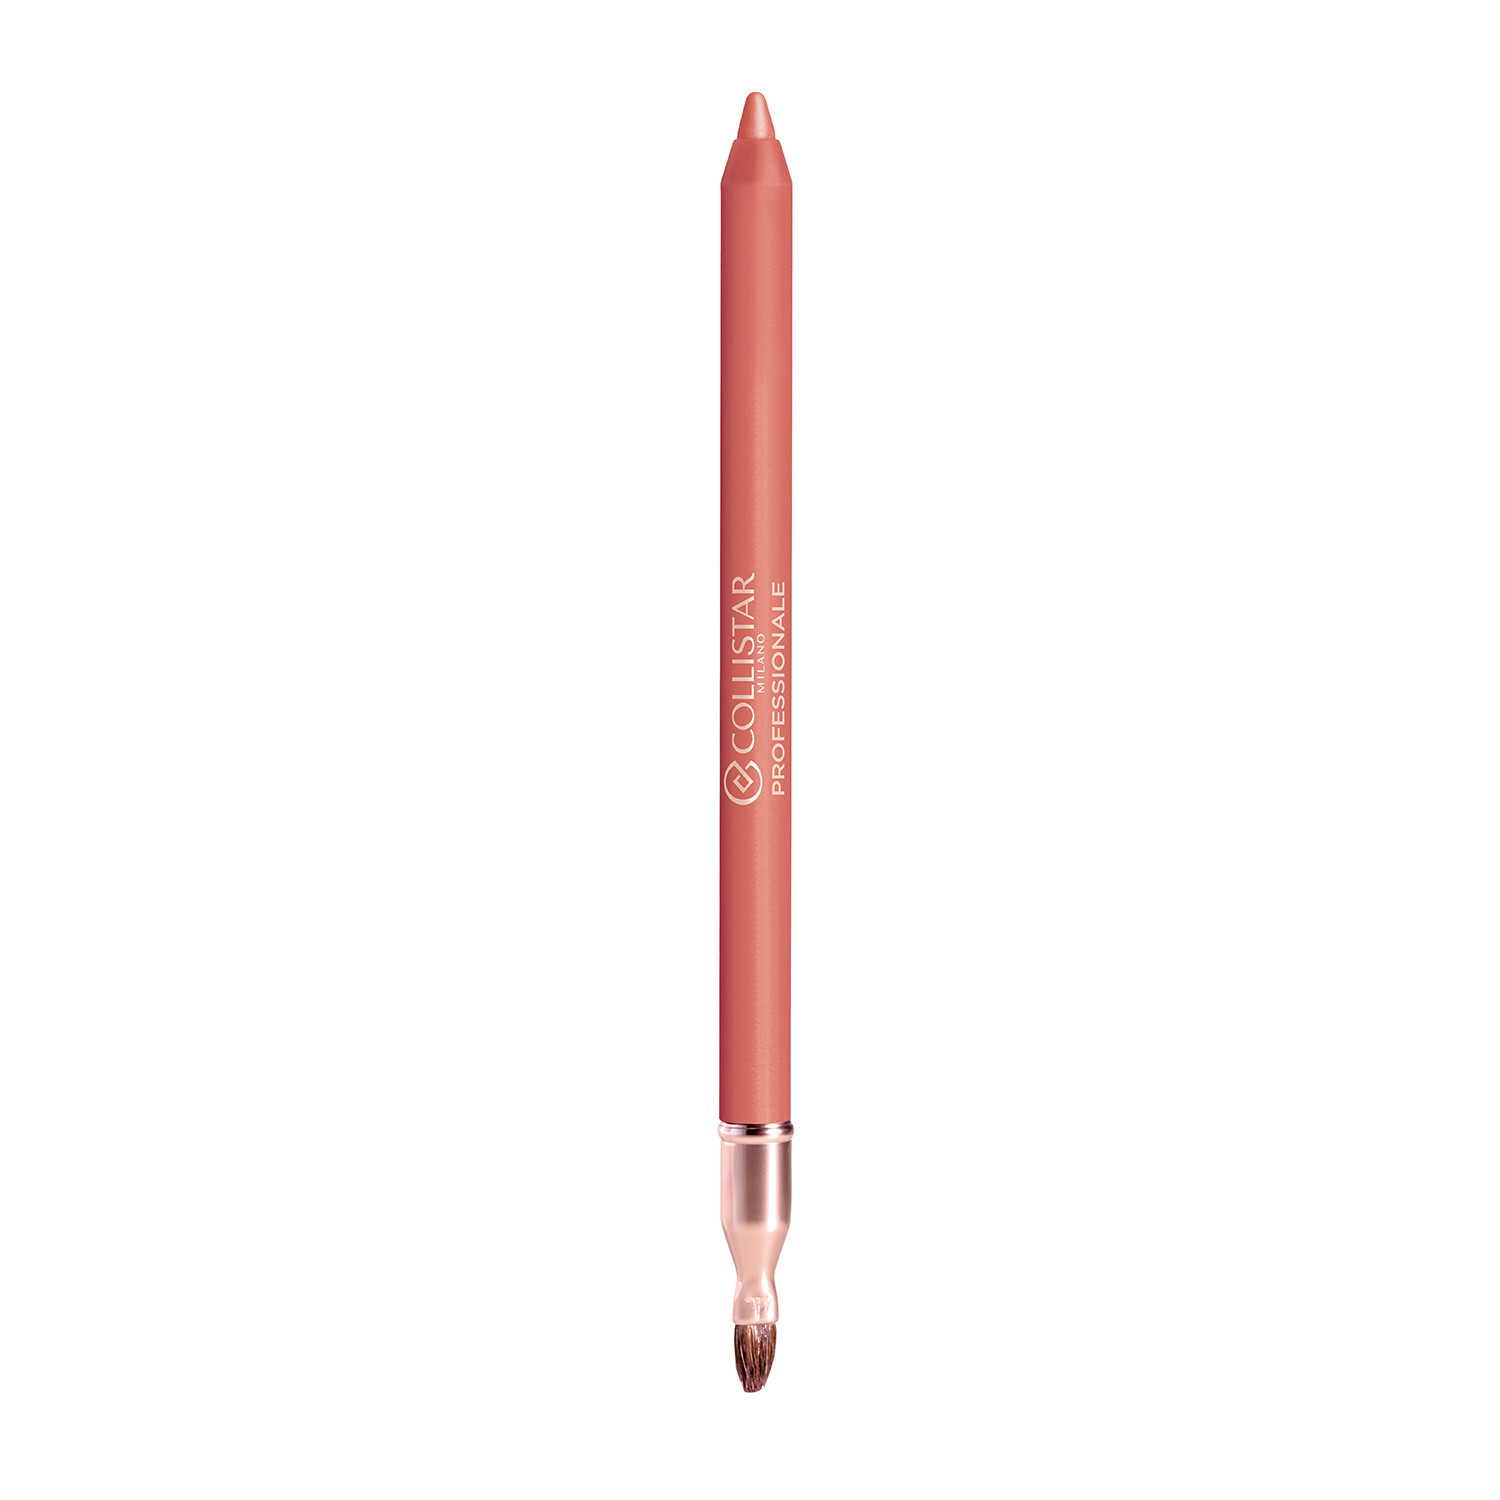 Collistar - Professionale matita labbra lunga durata - 102 Rosa Antico, Rosa antico, large image number 1